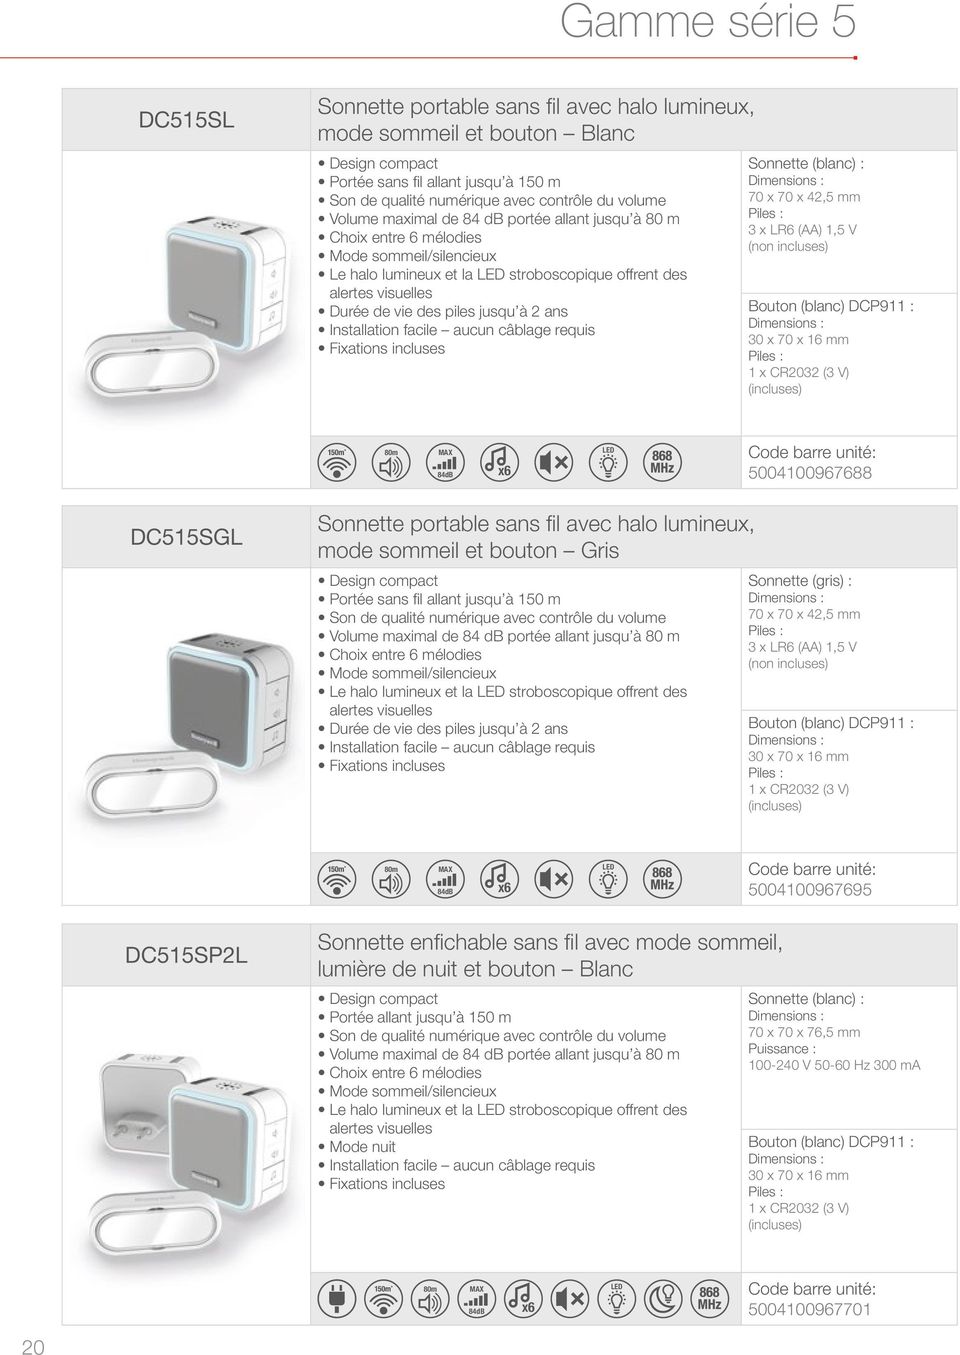 à 2 ans Sonnette (blanc) : 70 x 70 x 42,5 mm 3 x LR6 (AA) 1,5 V (non incluses) Bouton (blanc) DCP911 : (incluses) 80m MAX 84dB x6 LED Code barre unité: 5004100967688 DC515SGL Sonnette portable sans